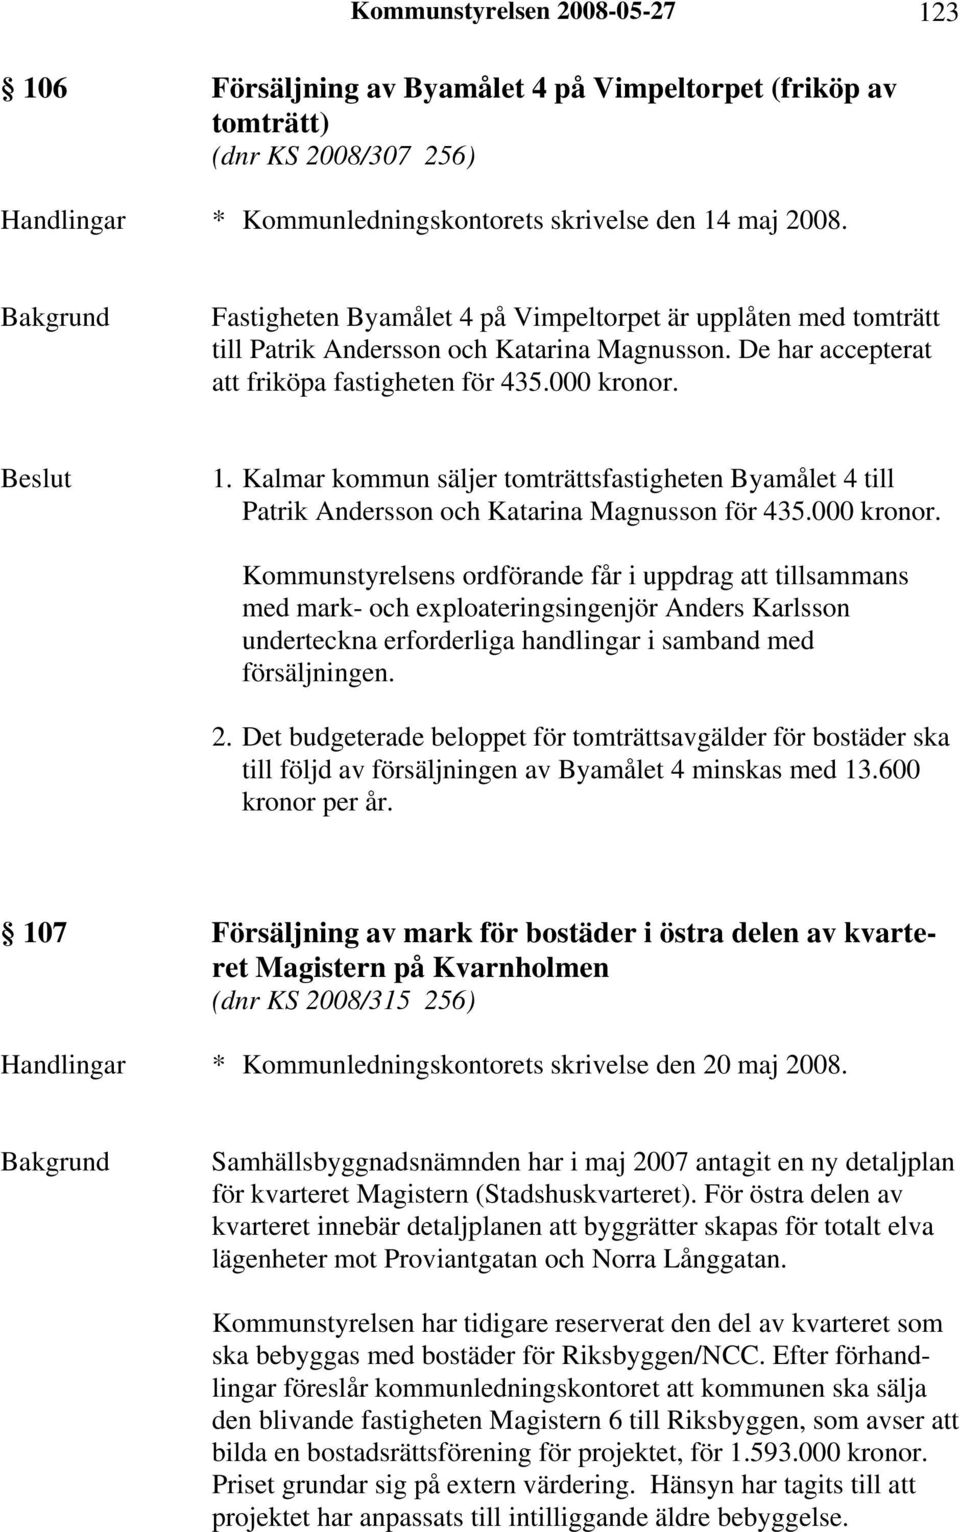 Kalmar kommun säljer tomträttsfastigheten Byamålet 4 till Patrik Andersson och Katarina Magnusson för 435.000 kronor.